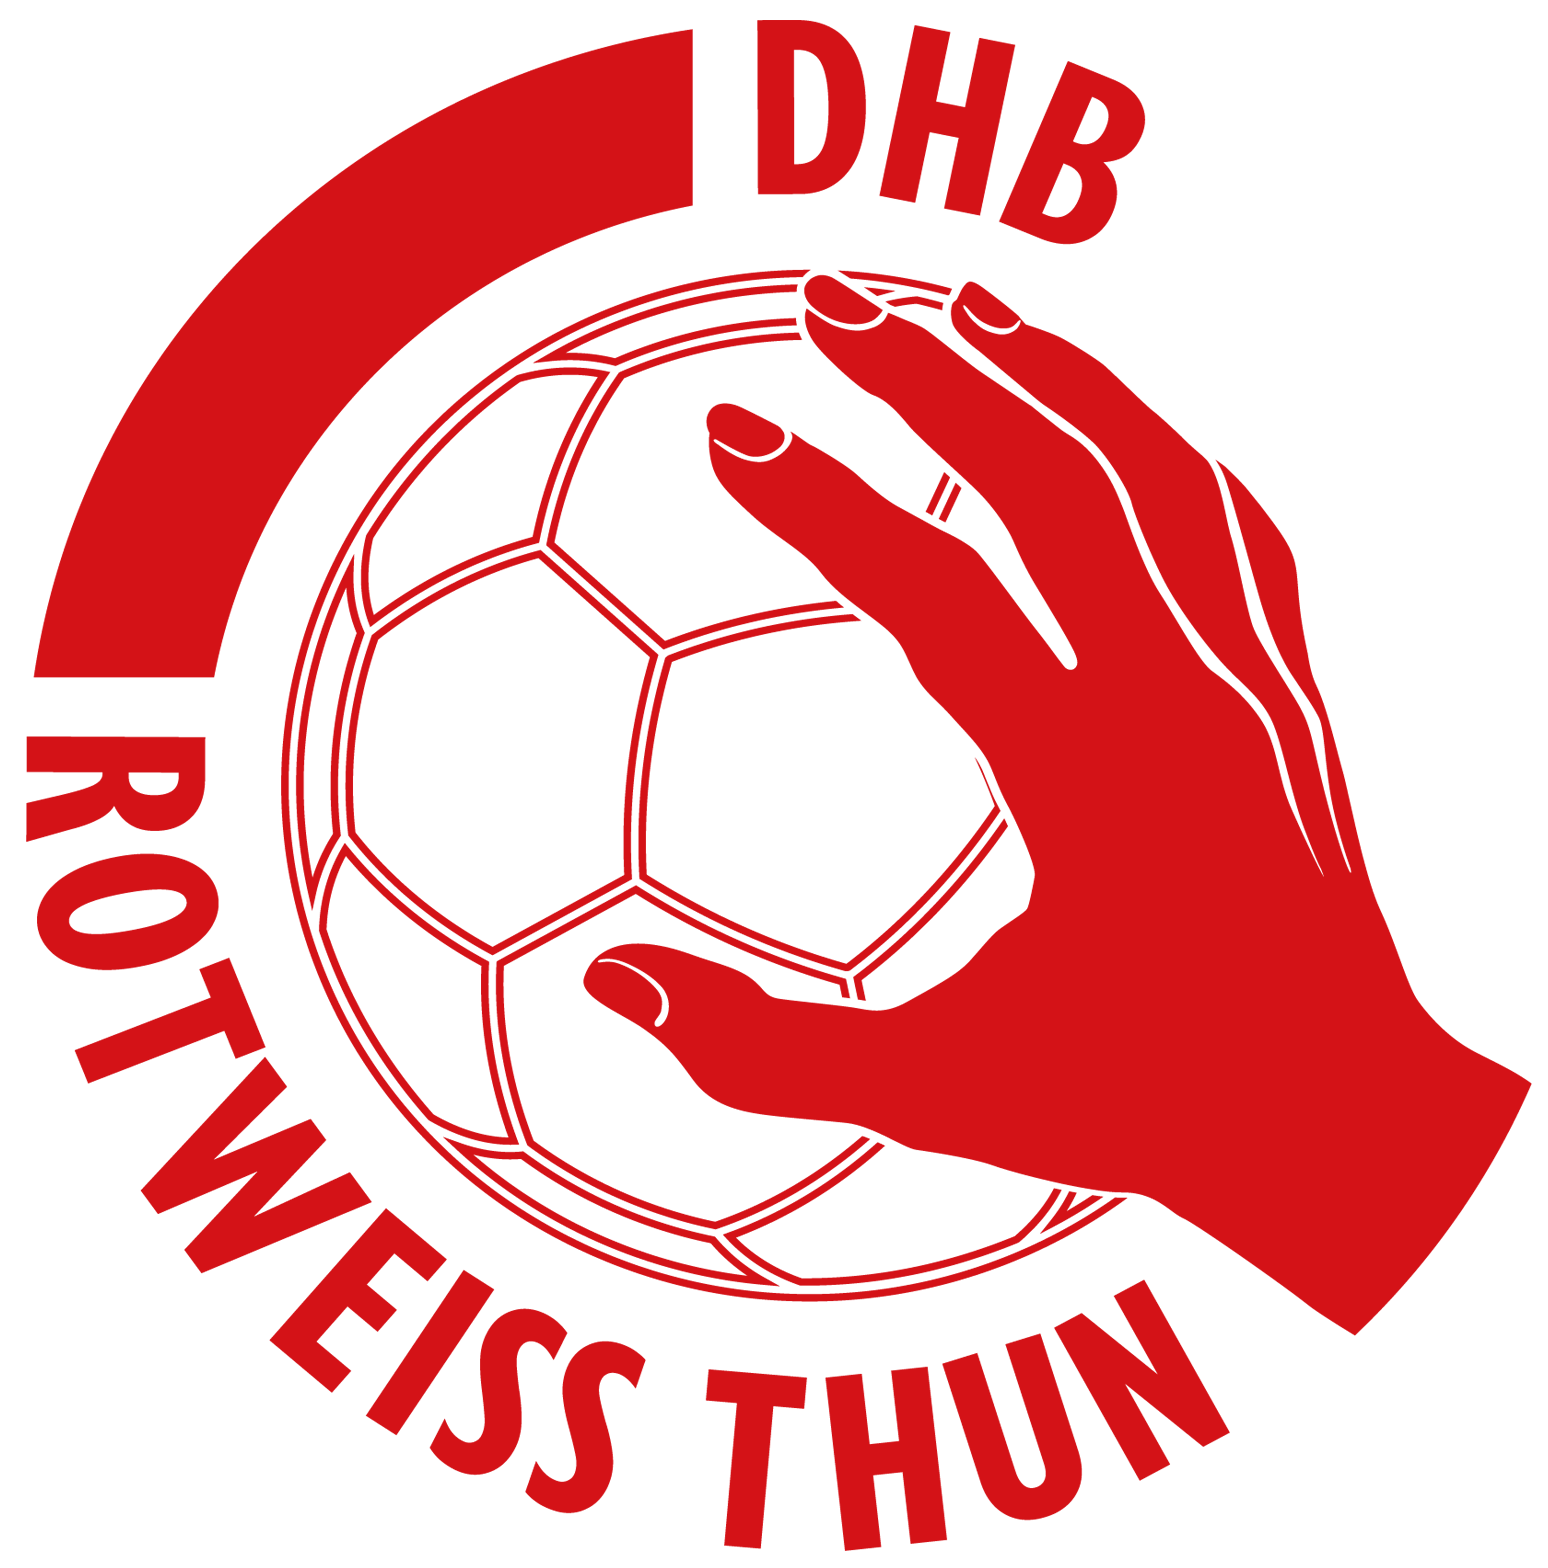 DHB Rotweiss Thun